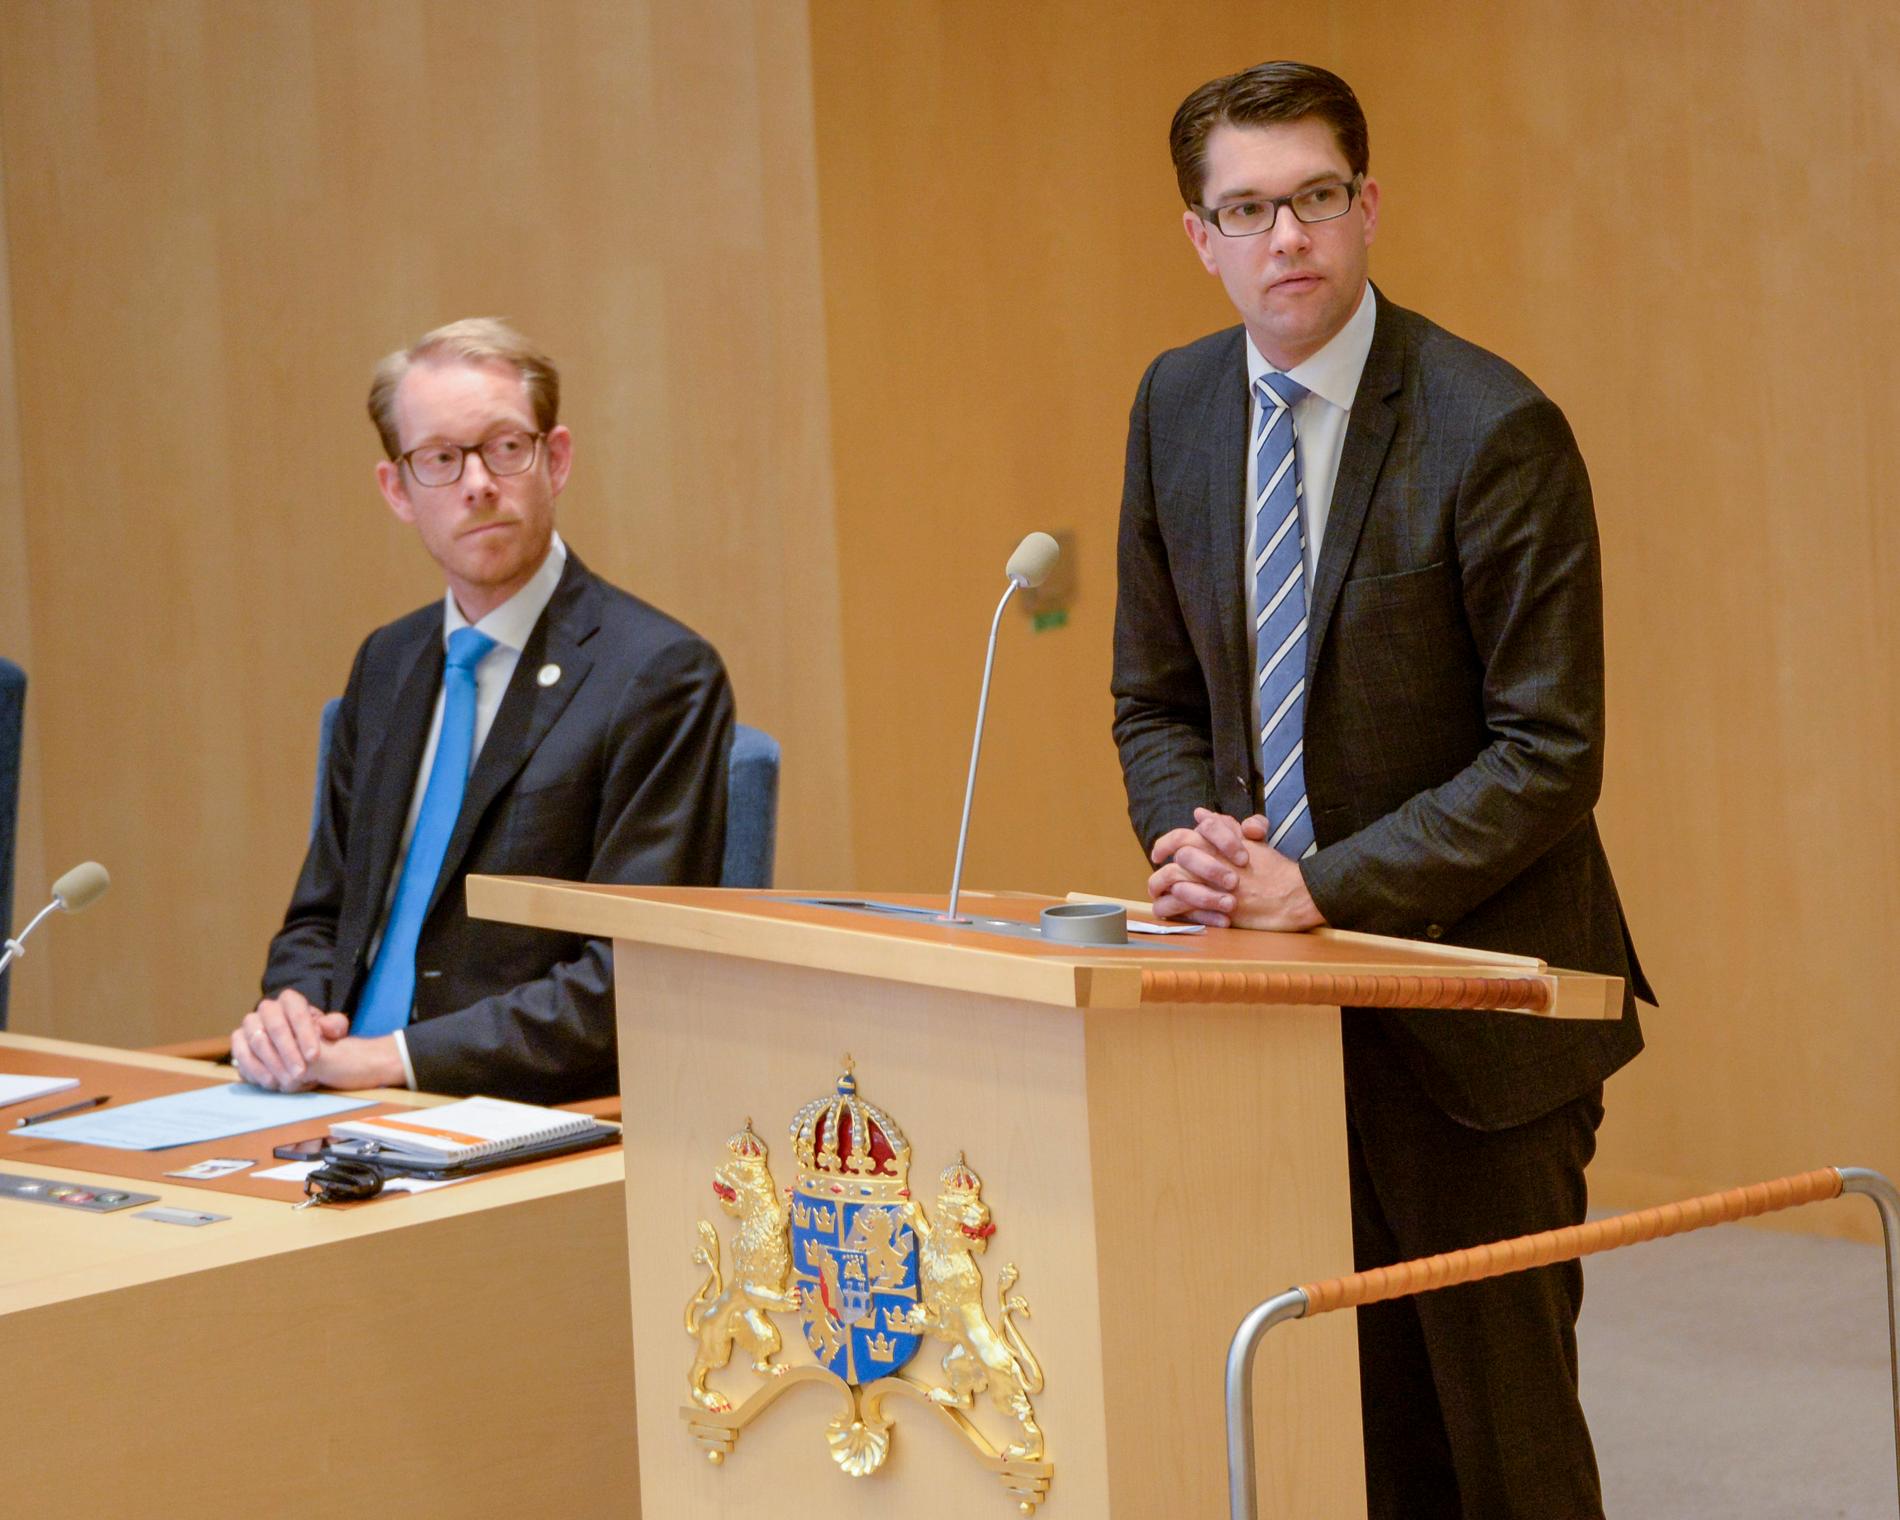 SD-ledaren Jimmie Åkesson och Moderaternas gruppledare, den tidigare vice talmannen och migrationsministern Tobias Billström, här på en bild från 2014, ska båda sitta i den migrationspolitiska kommittén för sina partier. Arkivbild.